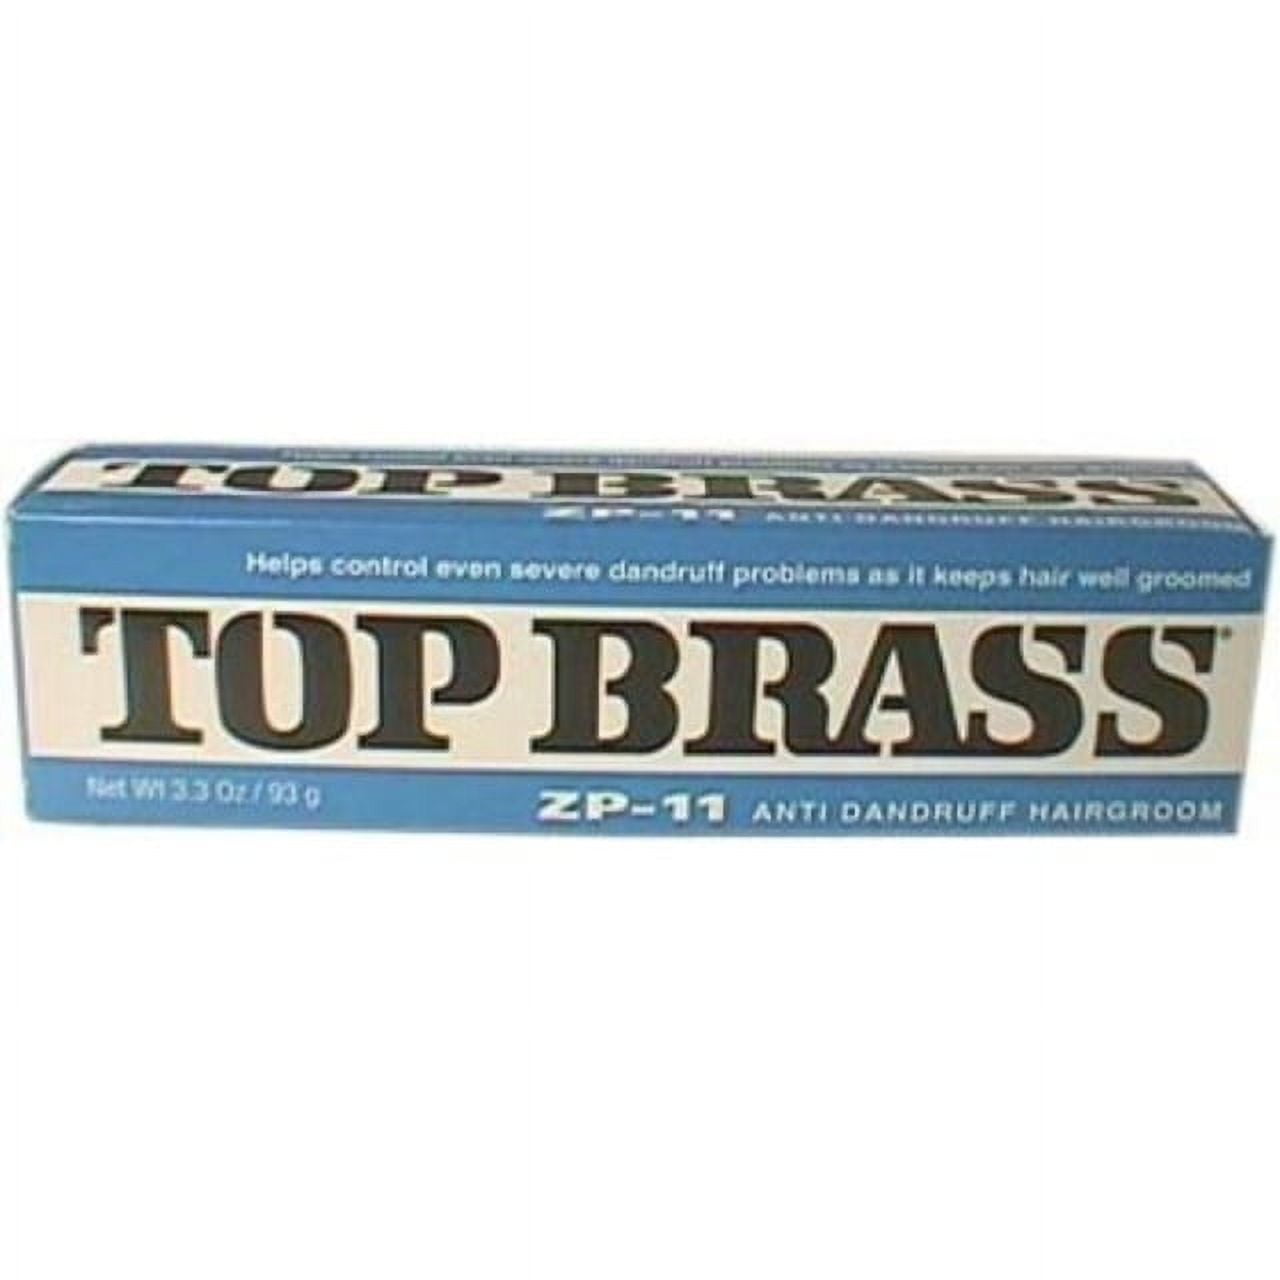 Top Brass by Revlon, ZP-11 Anti-Dandruff Hairgroom, 3 ozs